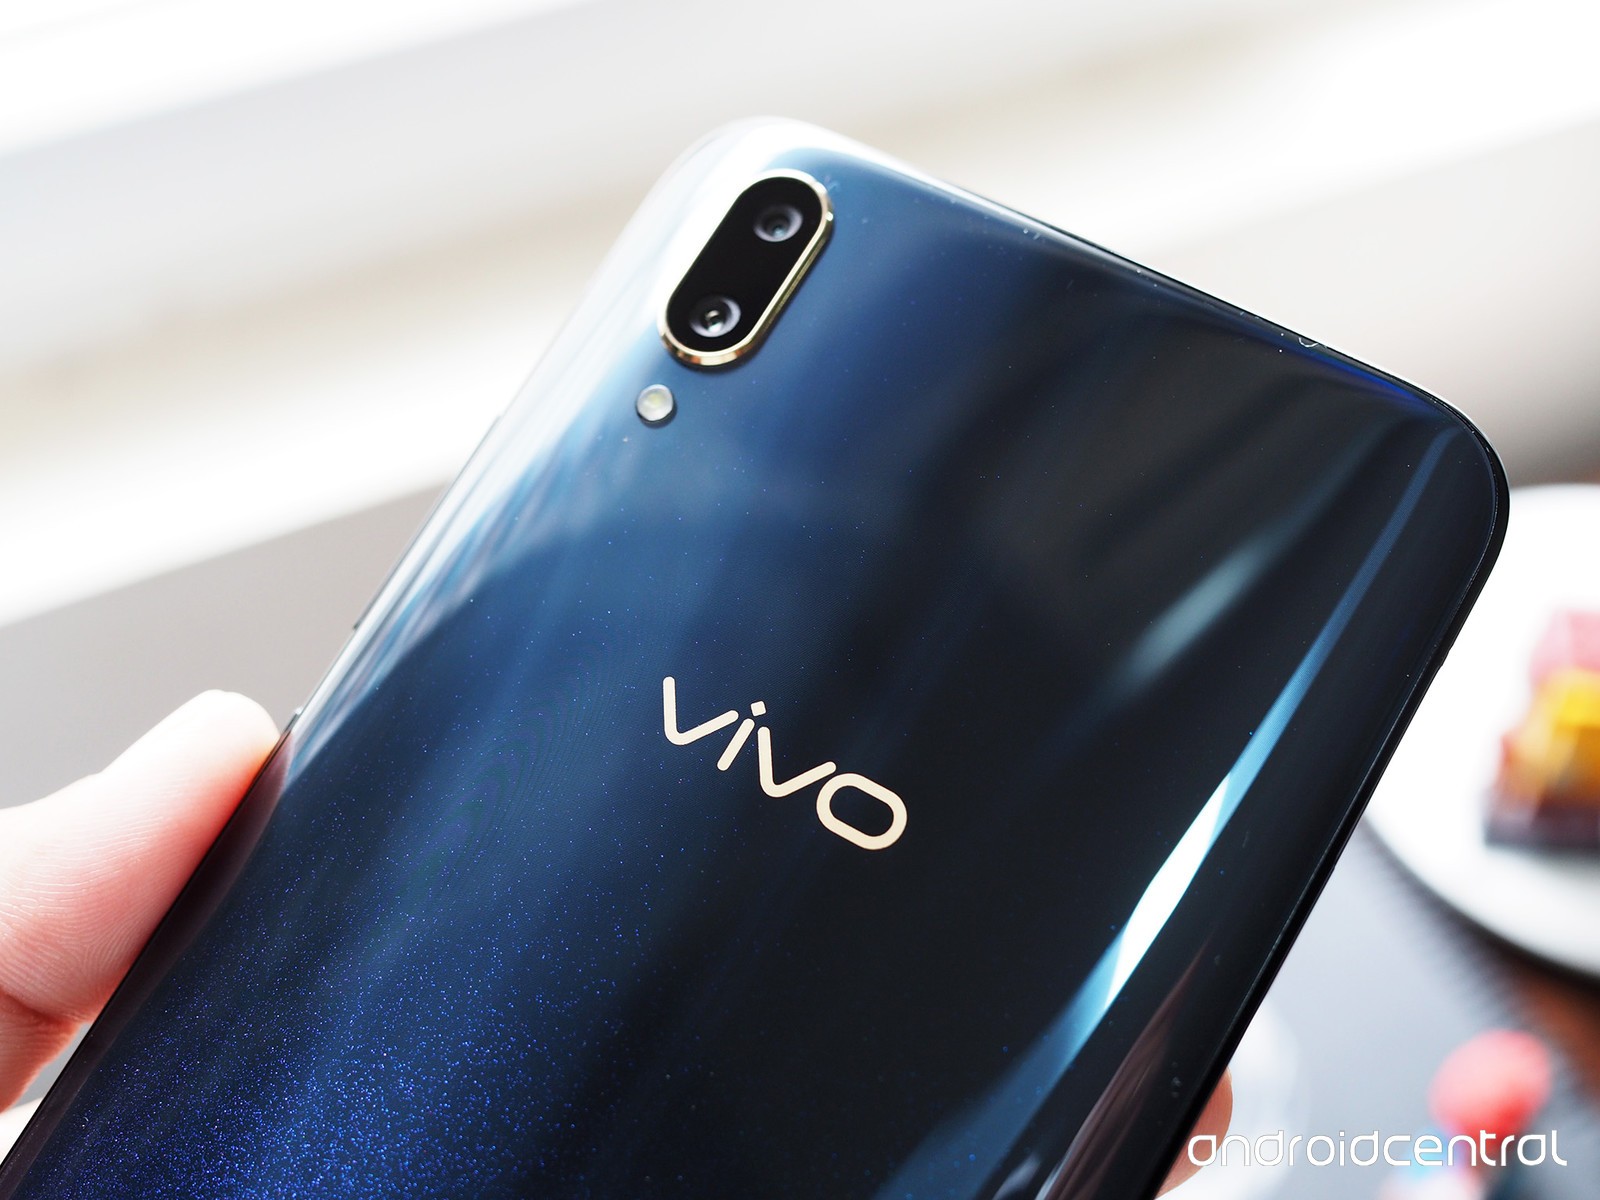 Đánh giá Vivo V11: mang đến trải nghiệm tốt hơn nhờ những thay đổi lớn trên màn hình